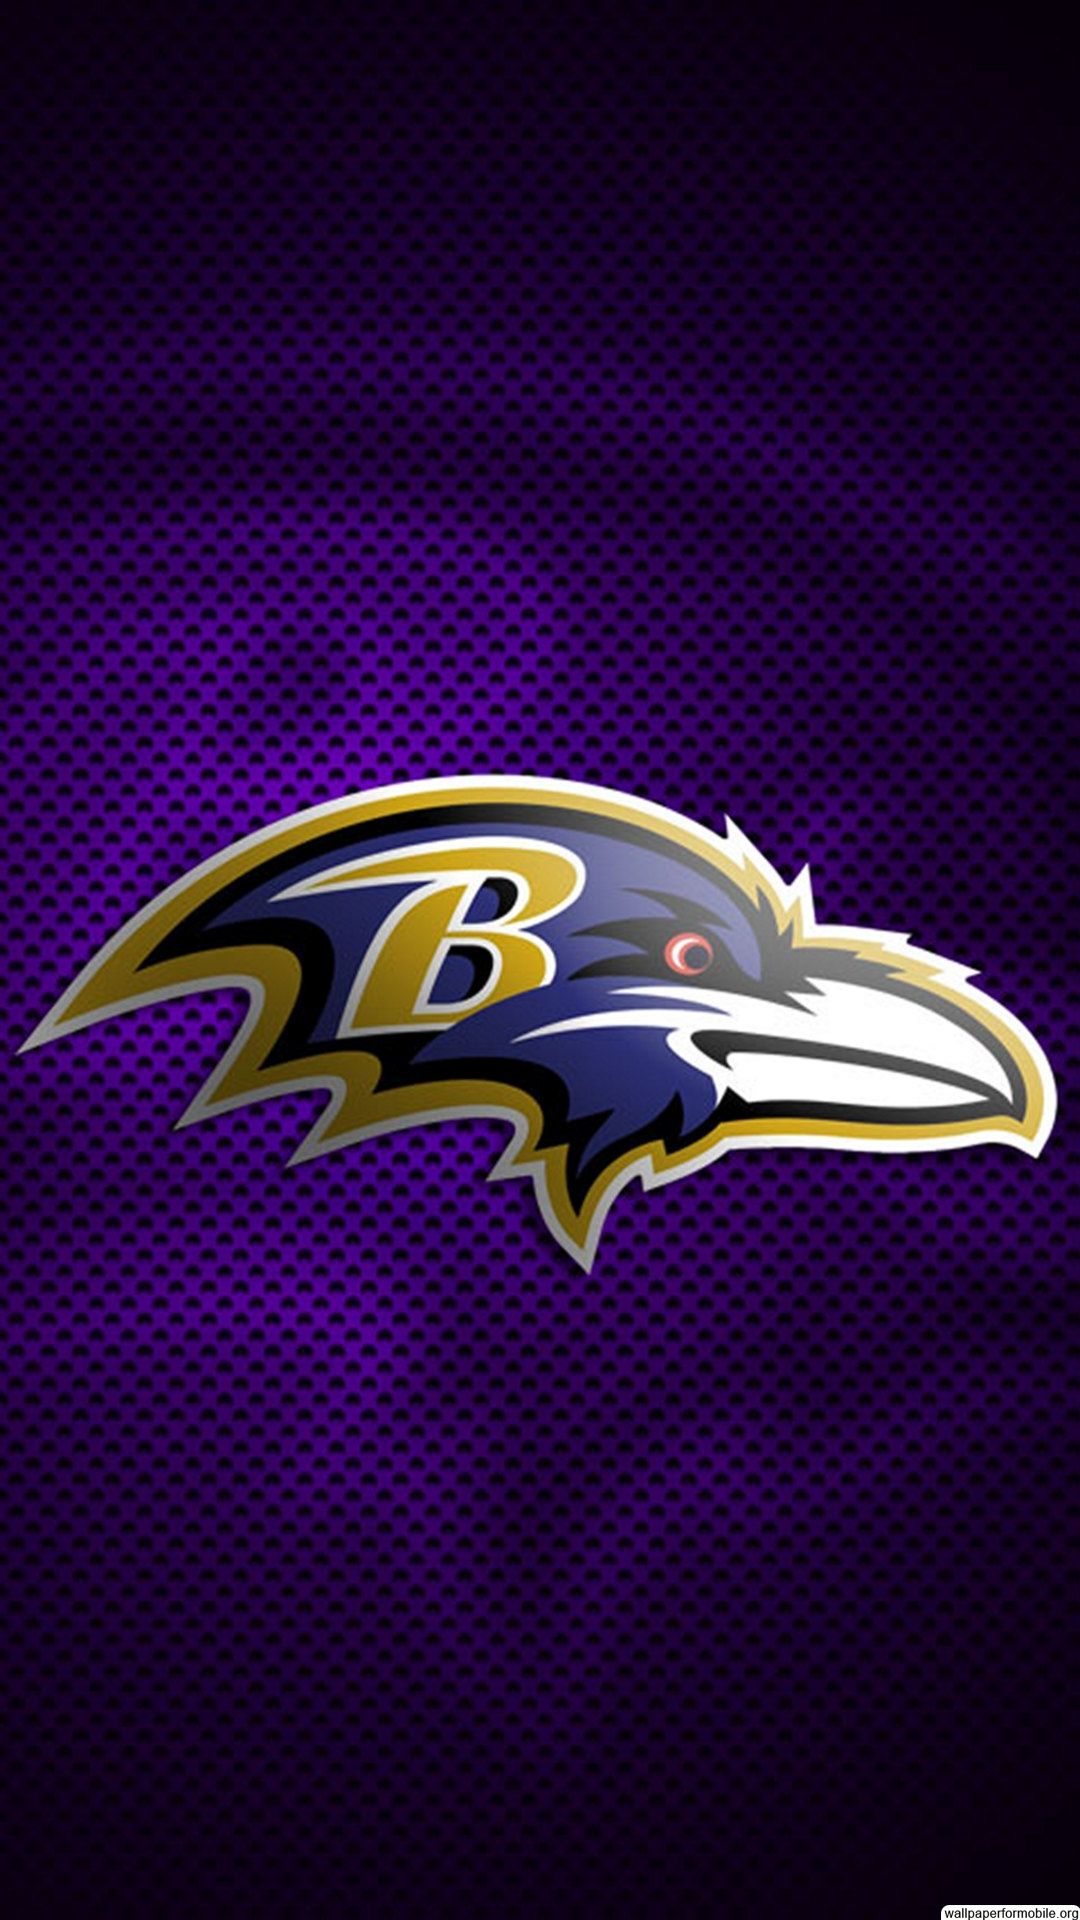 Baltimore ravens wallpaper, Baltimore ravens football, Baltimore ravens logo